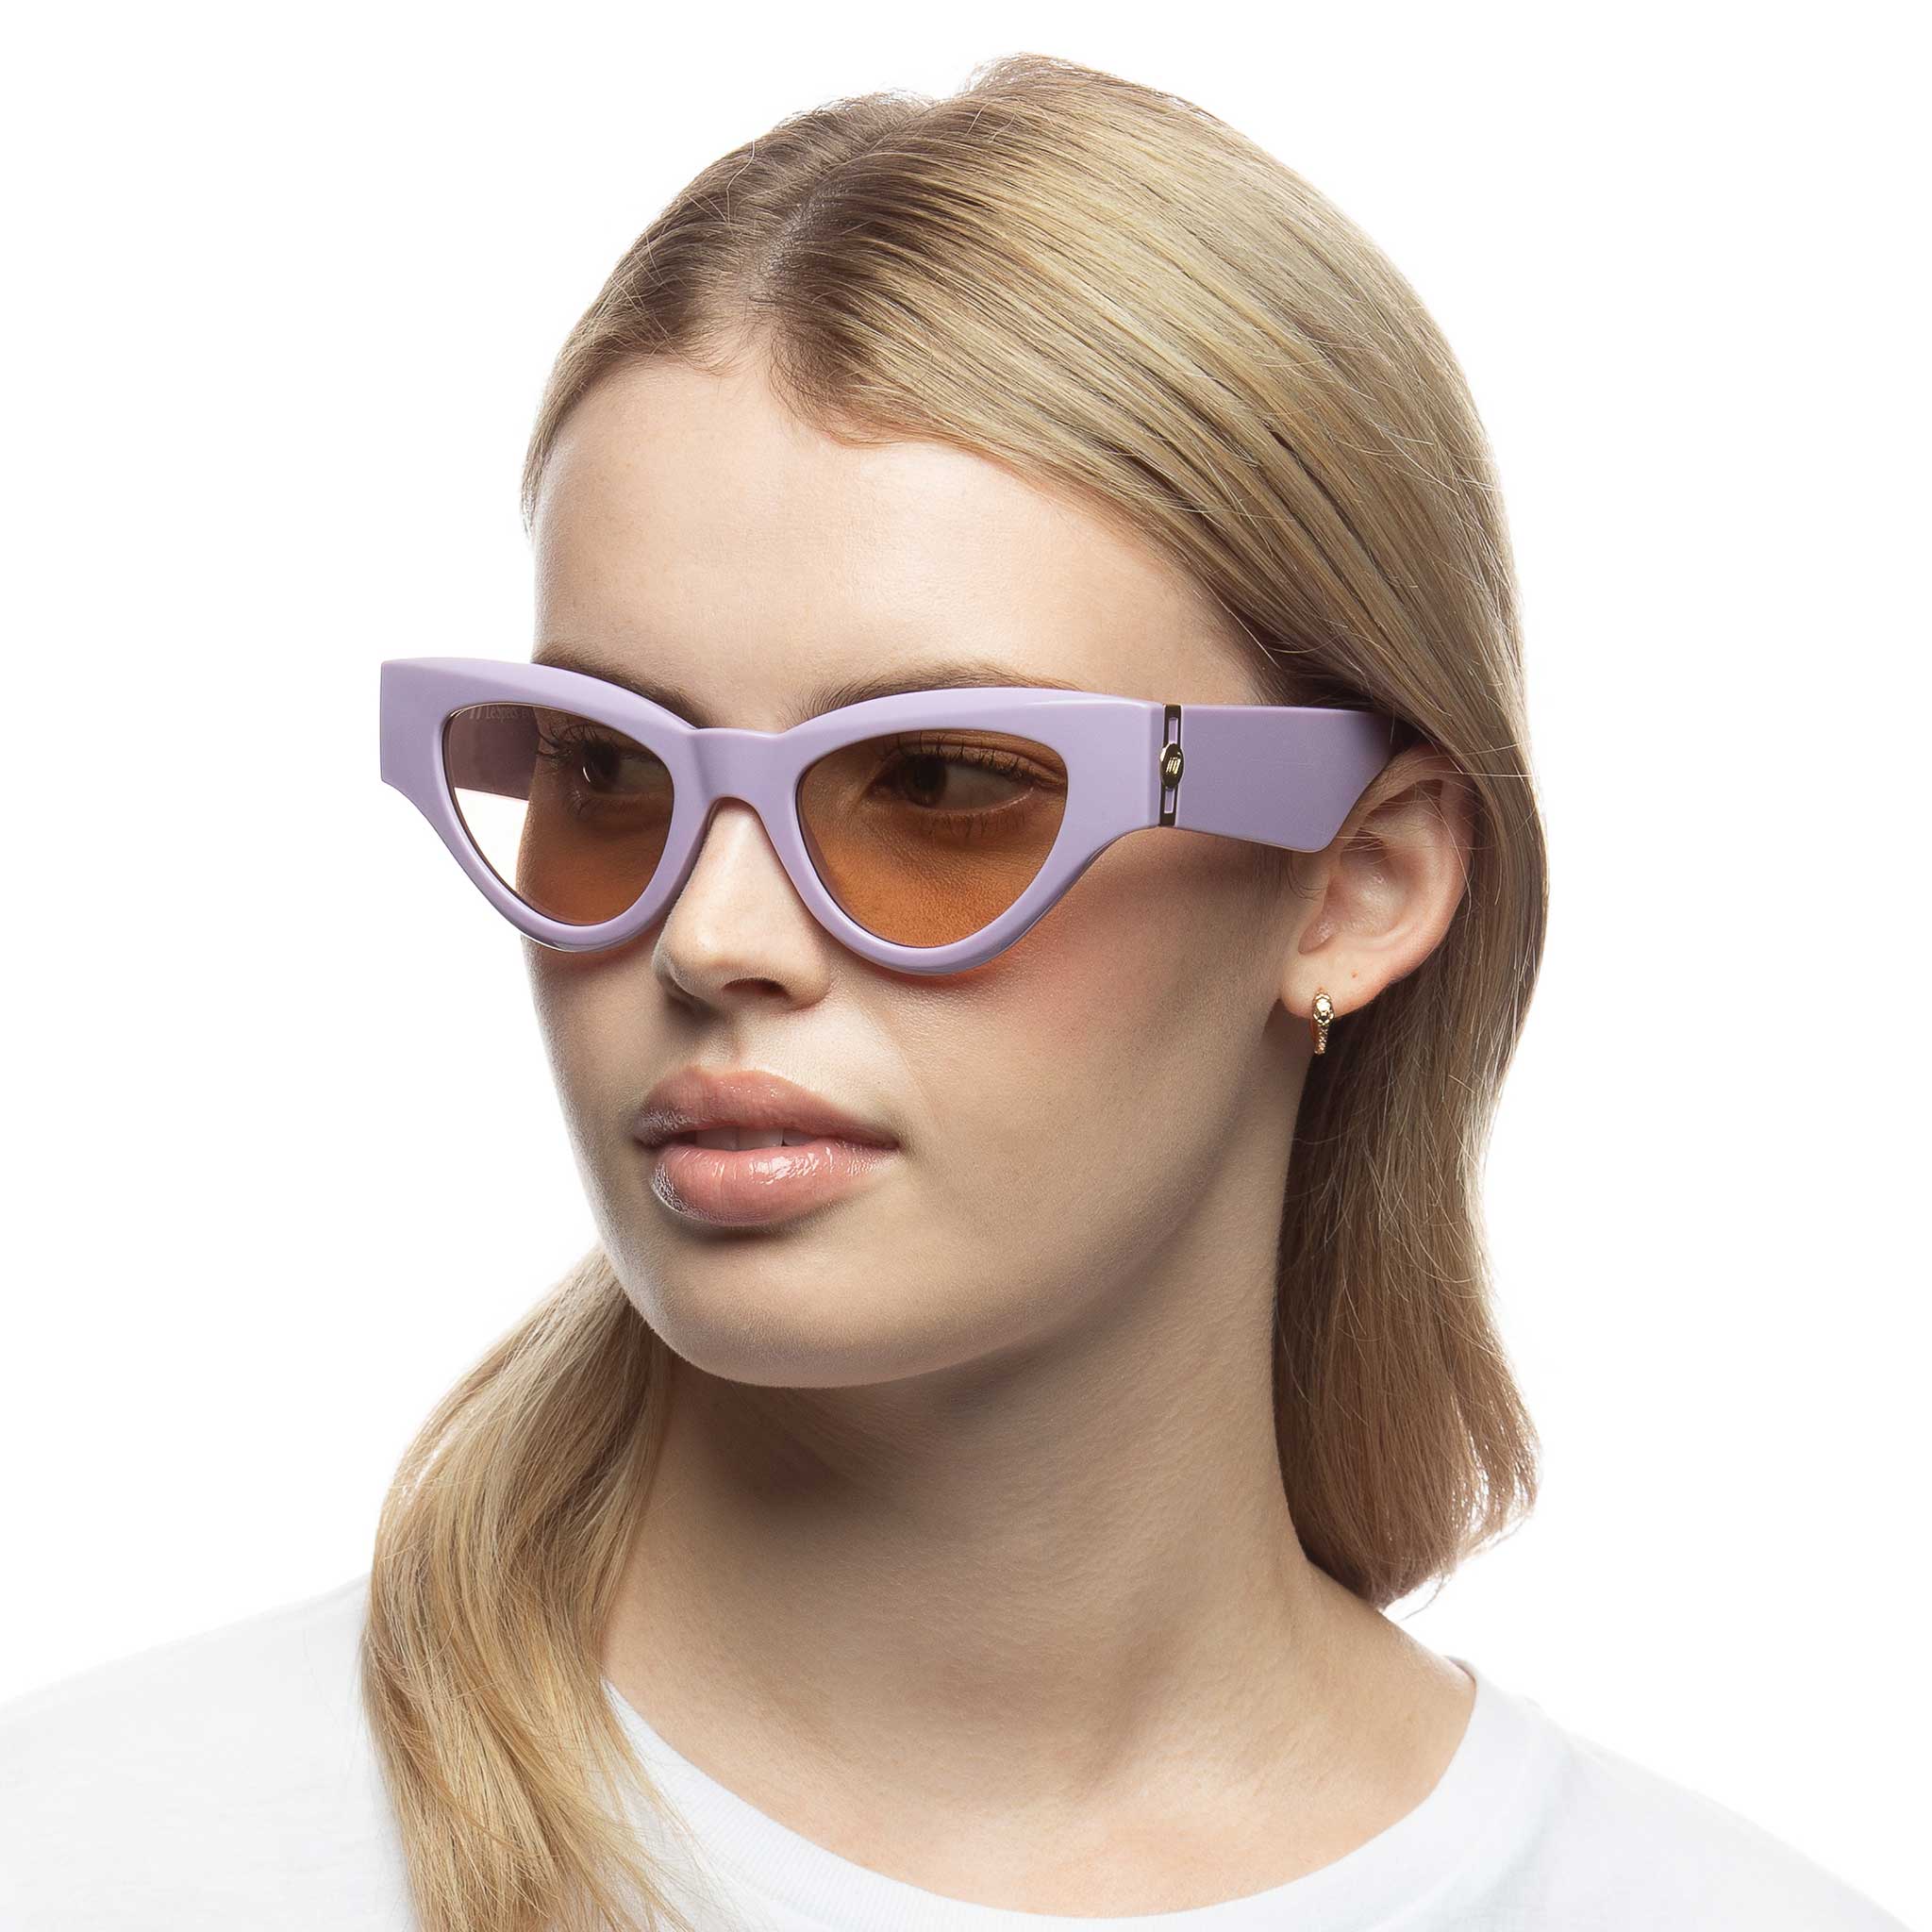 Fanplastico Sunglasses (Orchid)